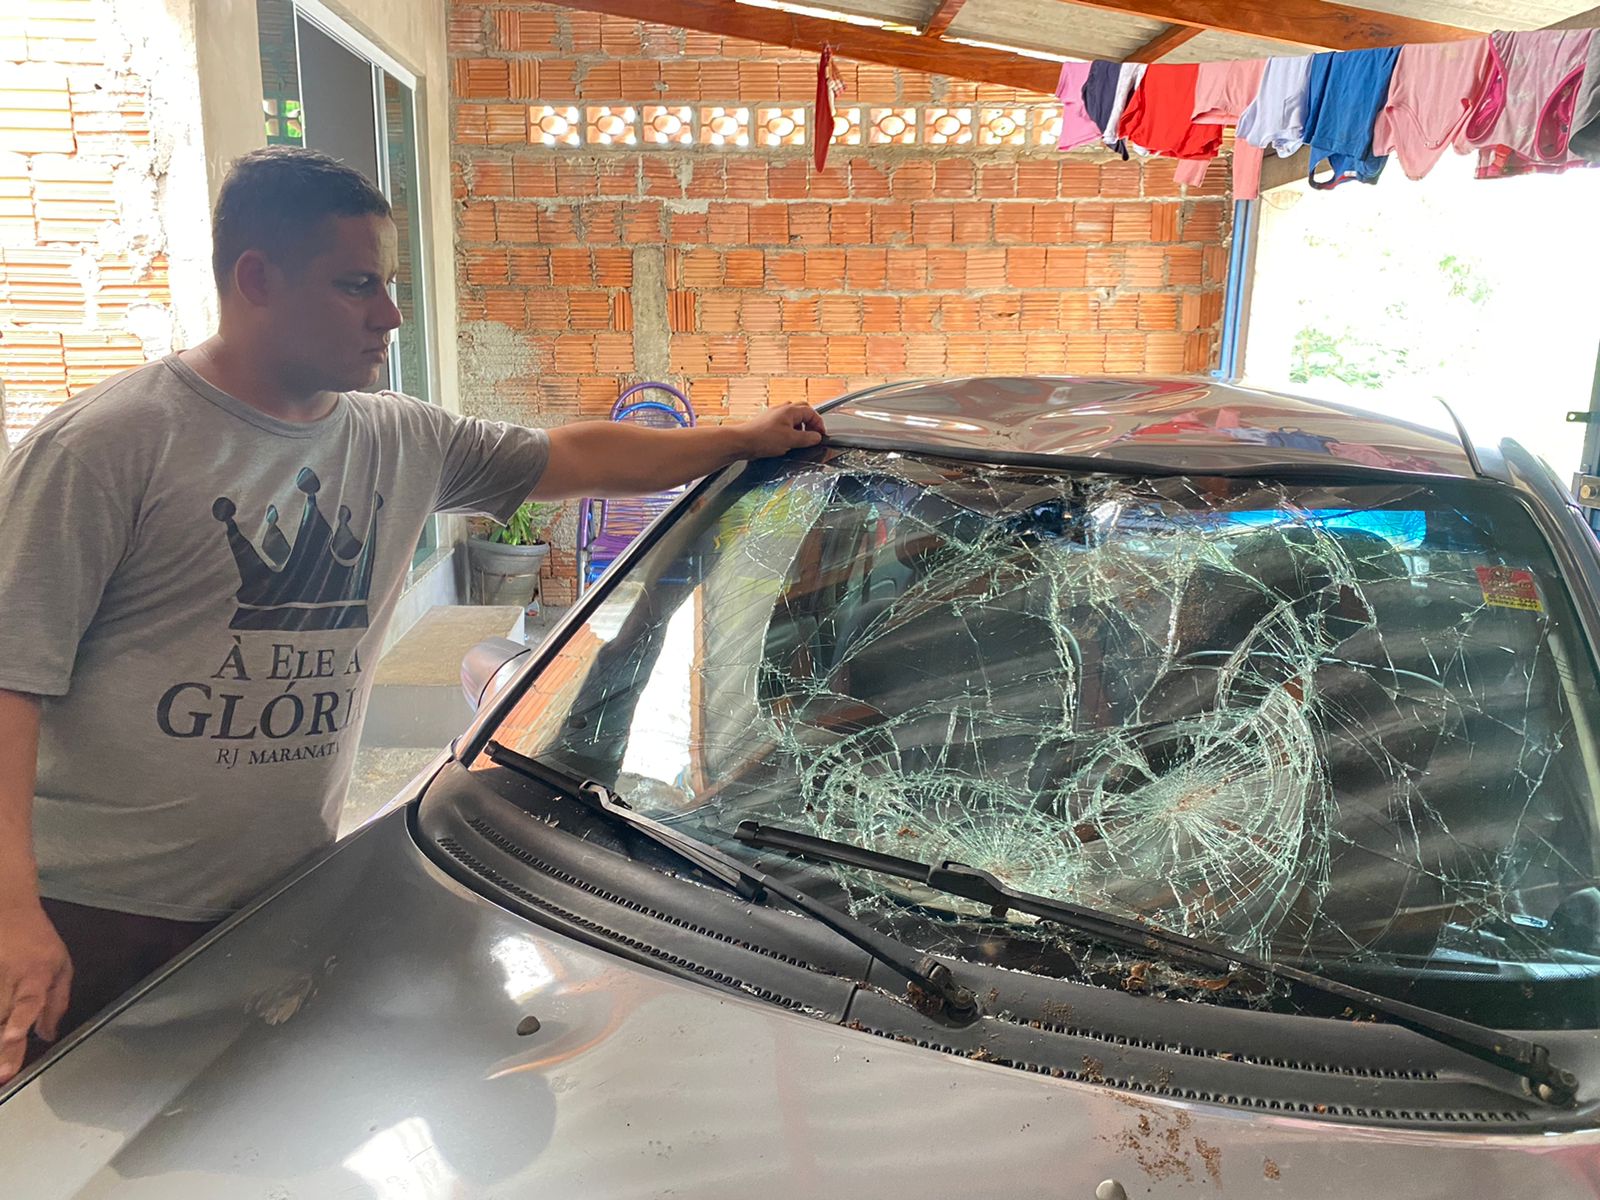 Desempregado, dono de carro atingido por árvore em Limeira espera proposta da Prefeitura para arcar com o prejuízo